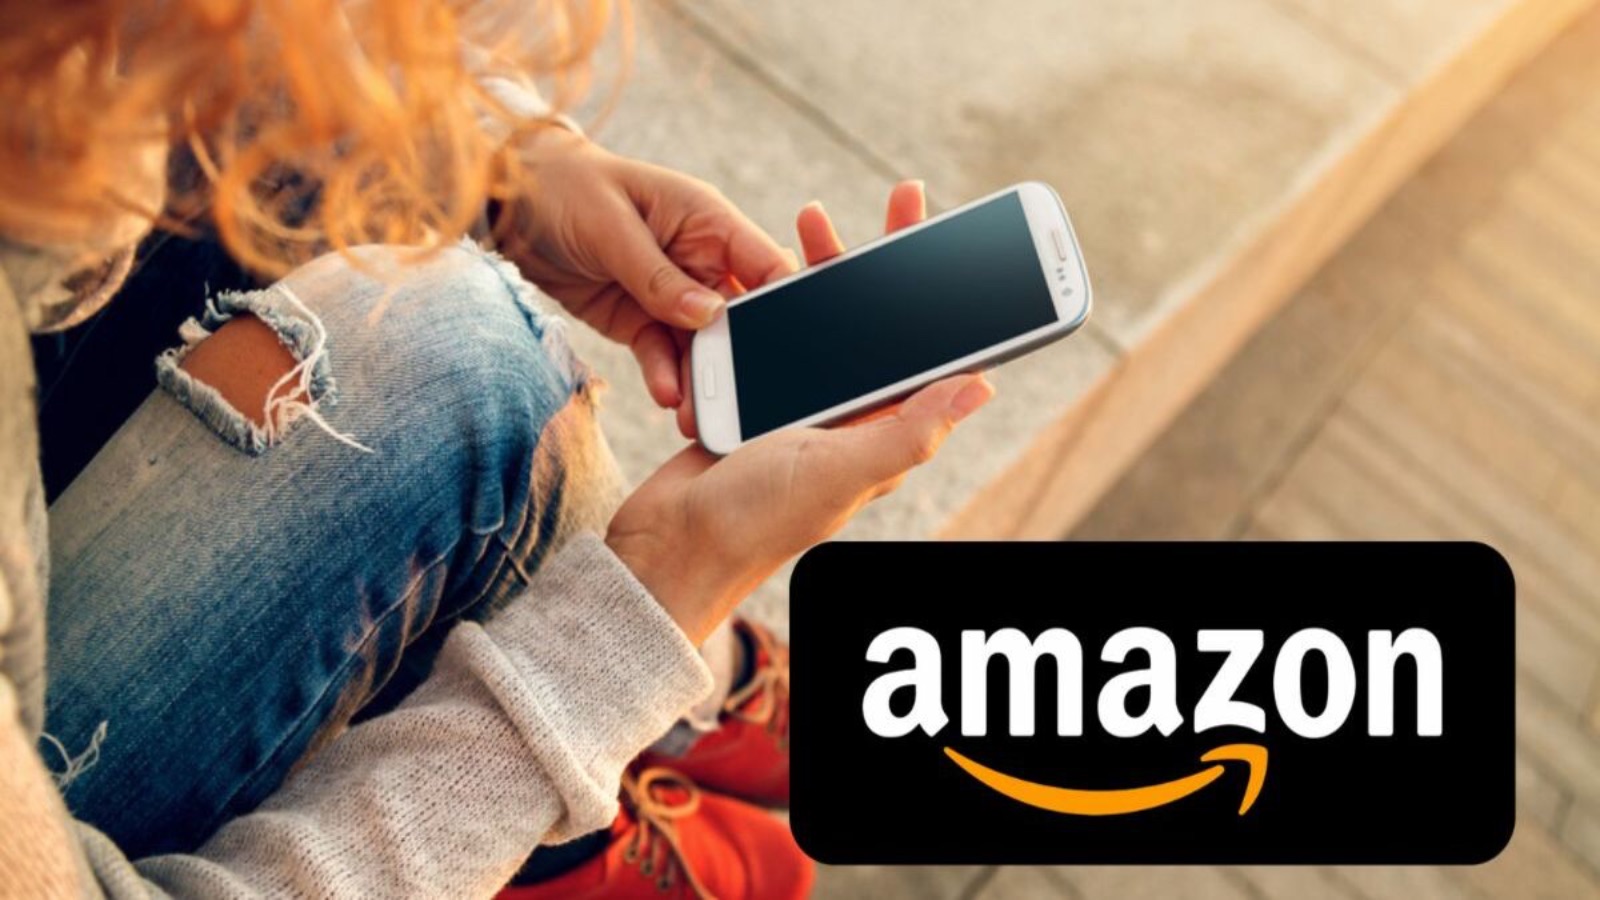 Amazon, CHE OFFERTE oggi: c'è il 65% di sconto su iPhone e Samsung